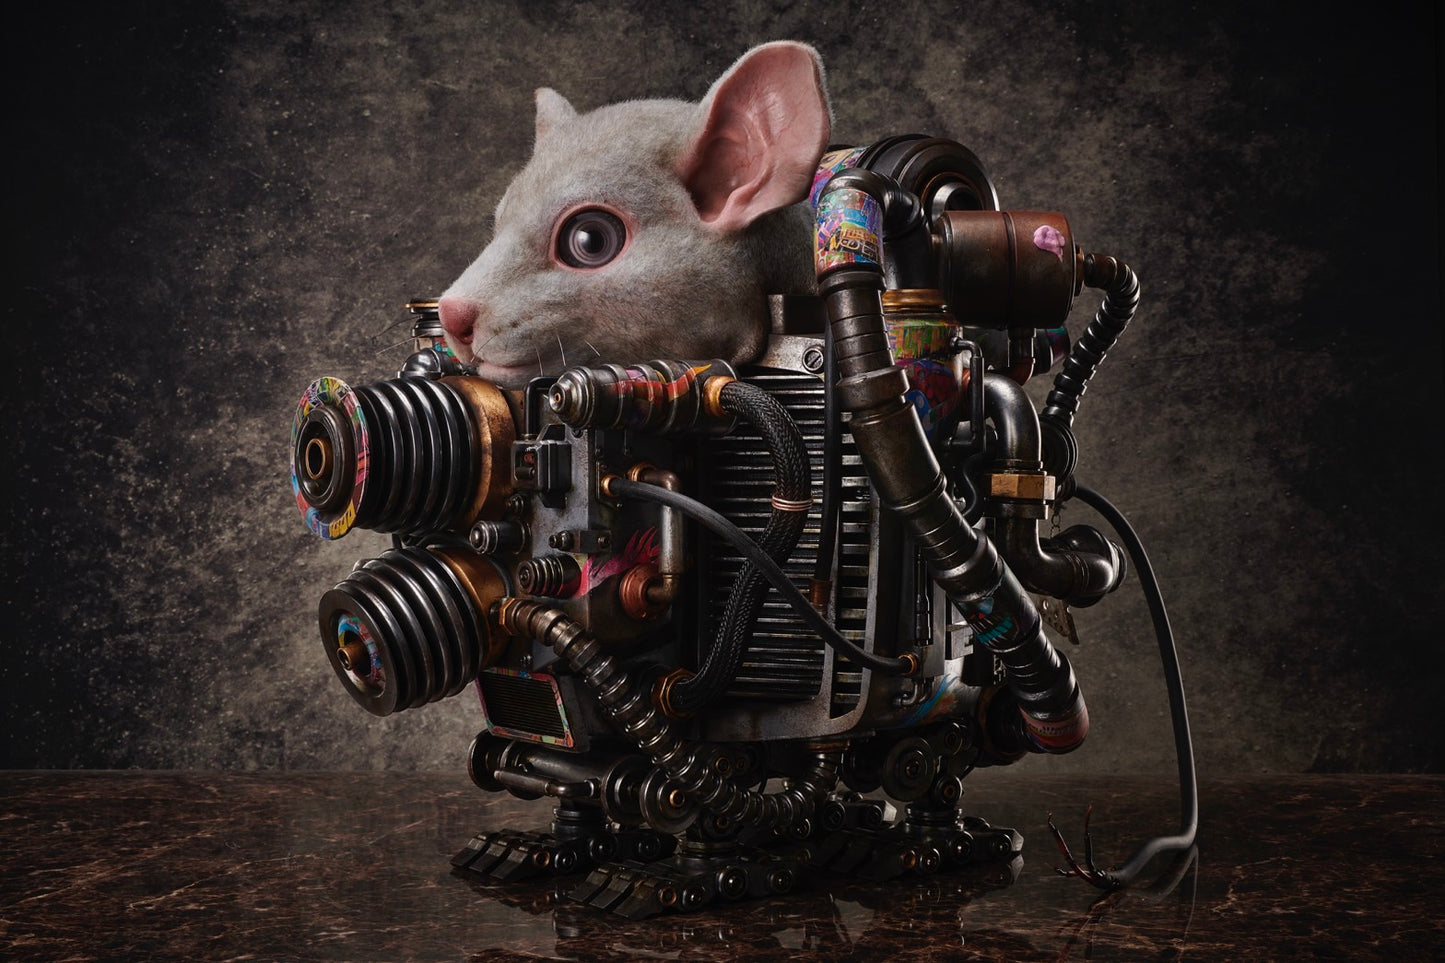 Rat Engine: II